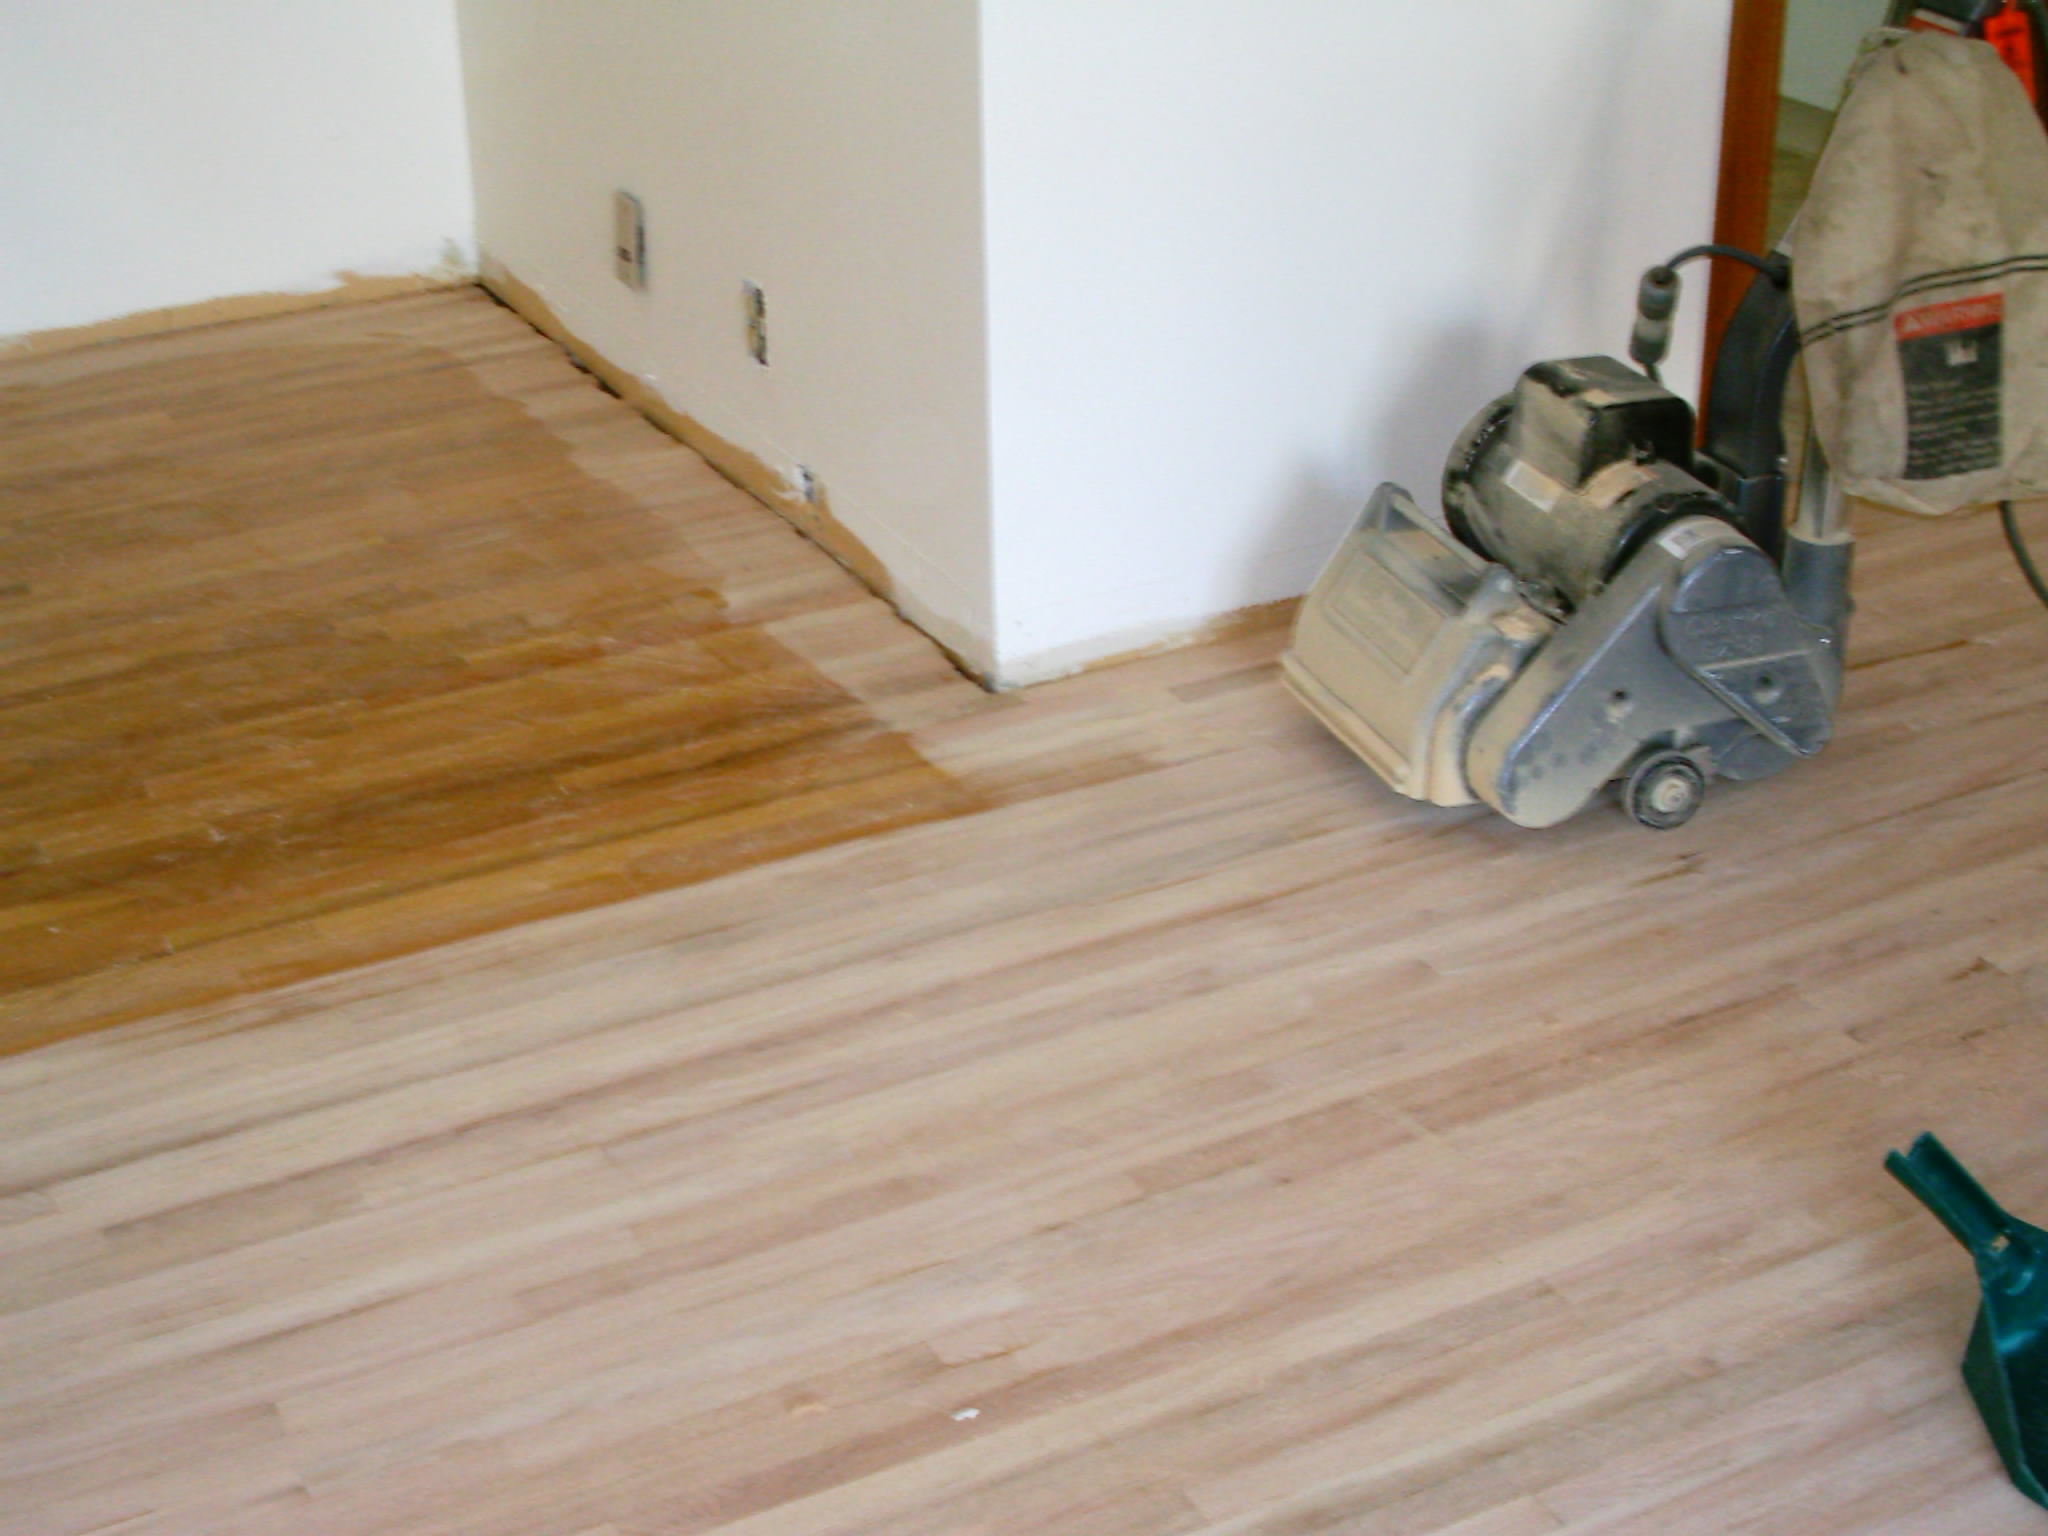 How do you sand a hardwood floor?